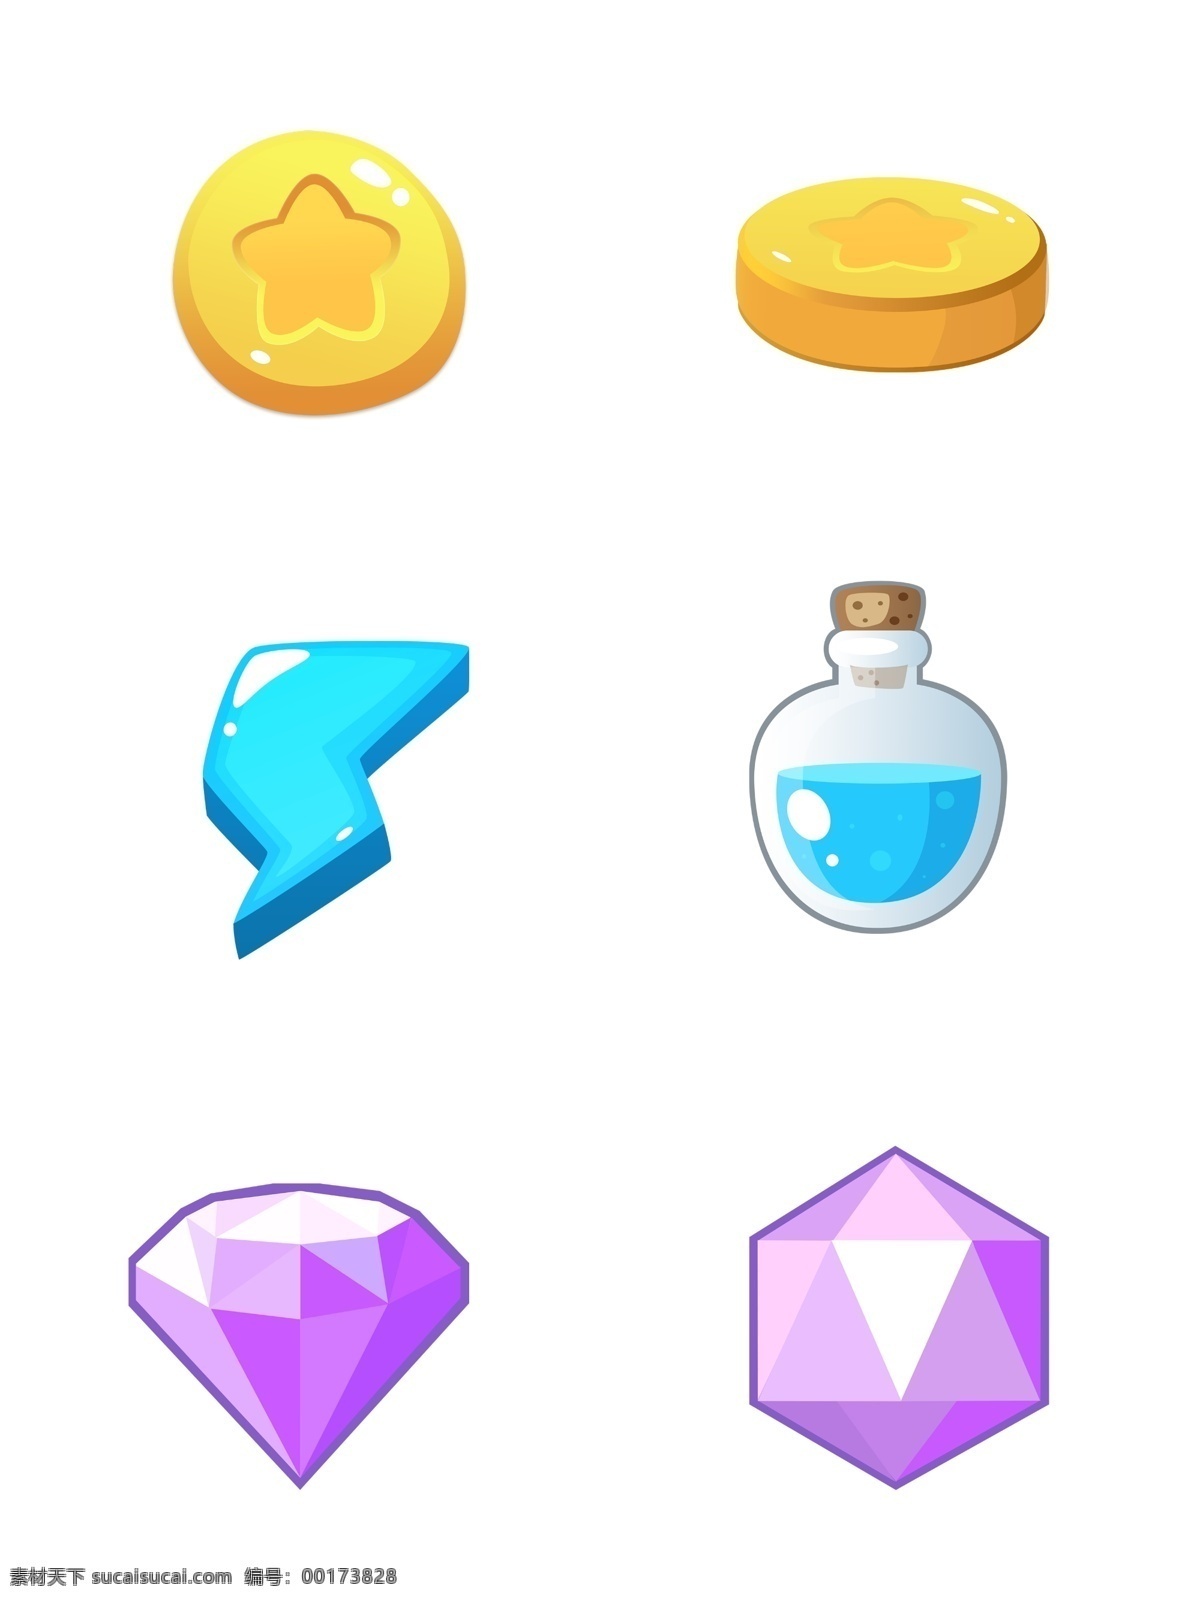 可爱 q 版 游戏 图标 合集 q版 游戏图标 图标合集 金币 能量瓶 钻石 黄色 蓝色 紫色